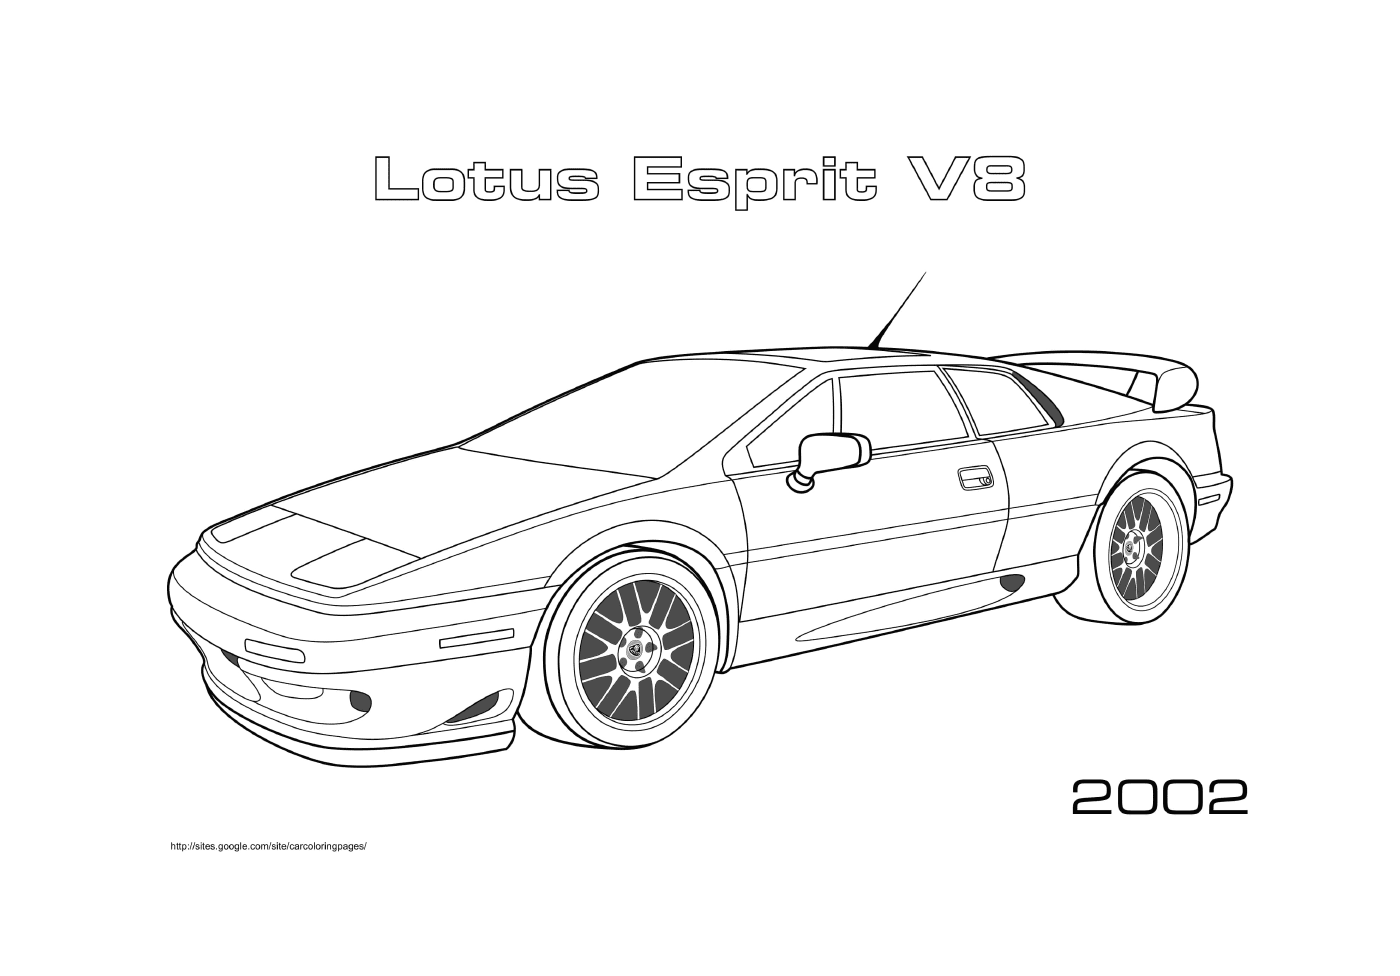  लोटस एस्किट वी8 2002 